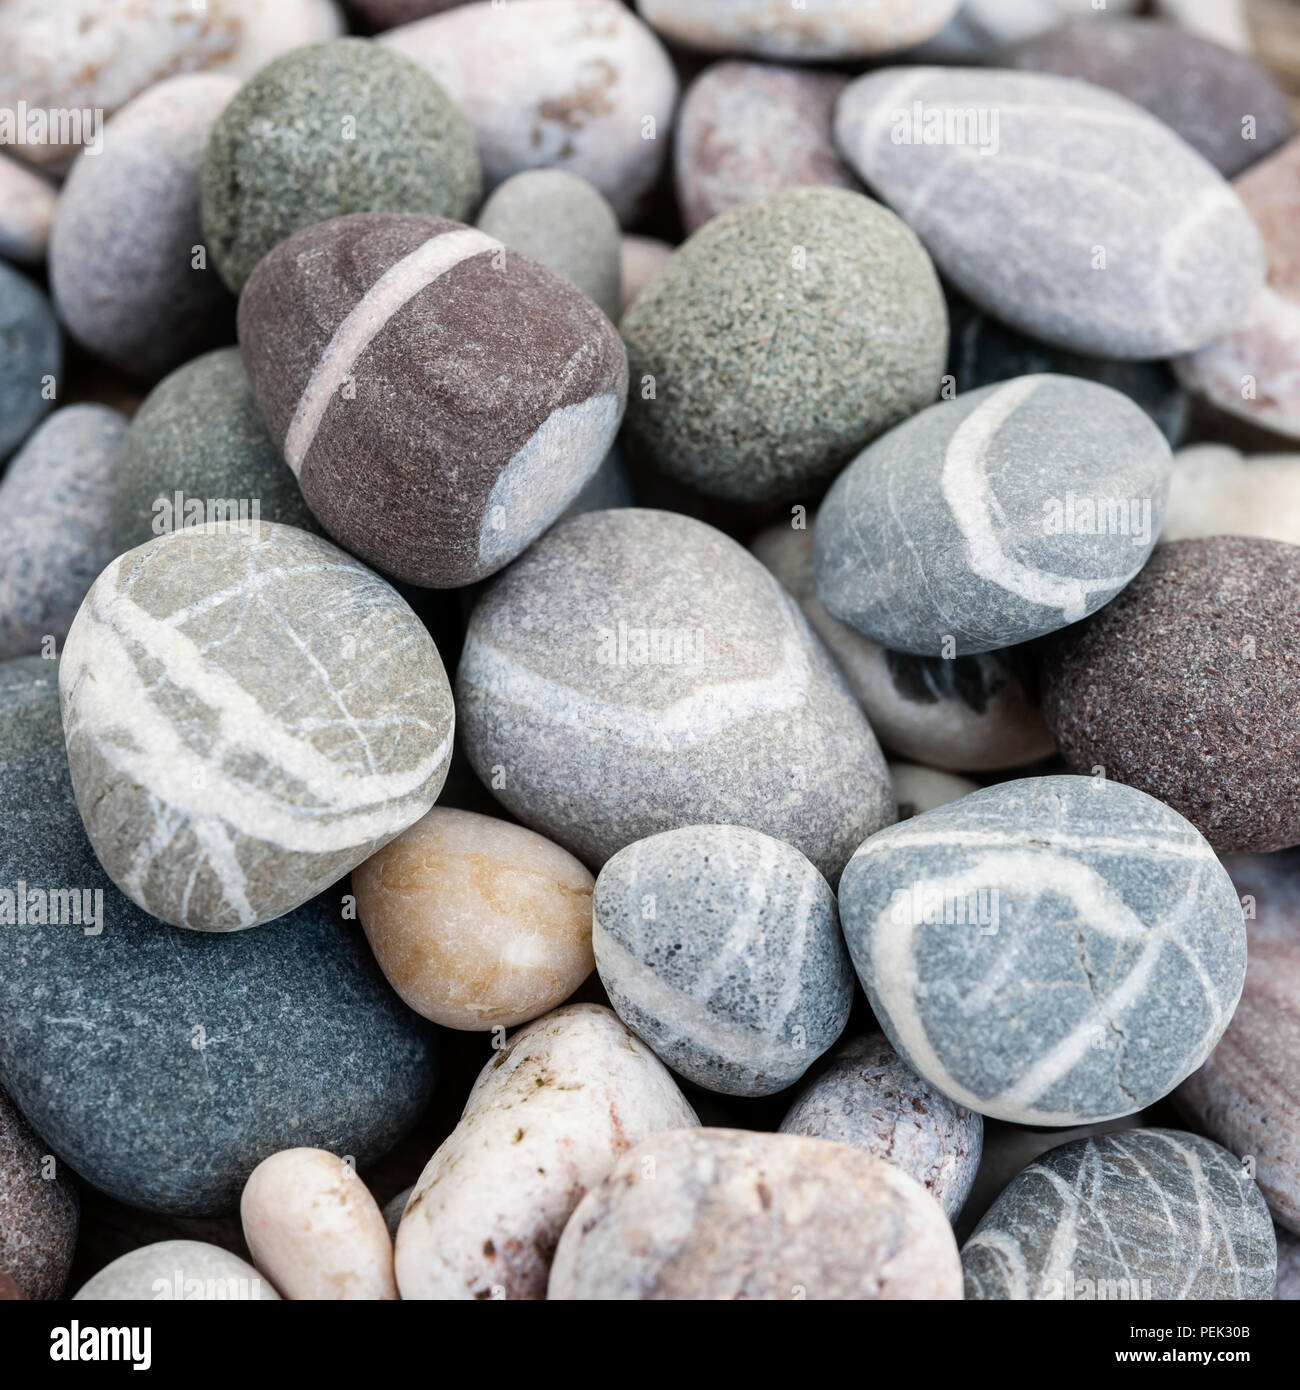 Playa redondos pequeños guijarros o rocas lisas con diferentes formas y colores de piedras, macro de cerca. Formato cuadrado. Foto de stock